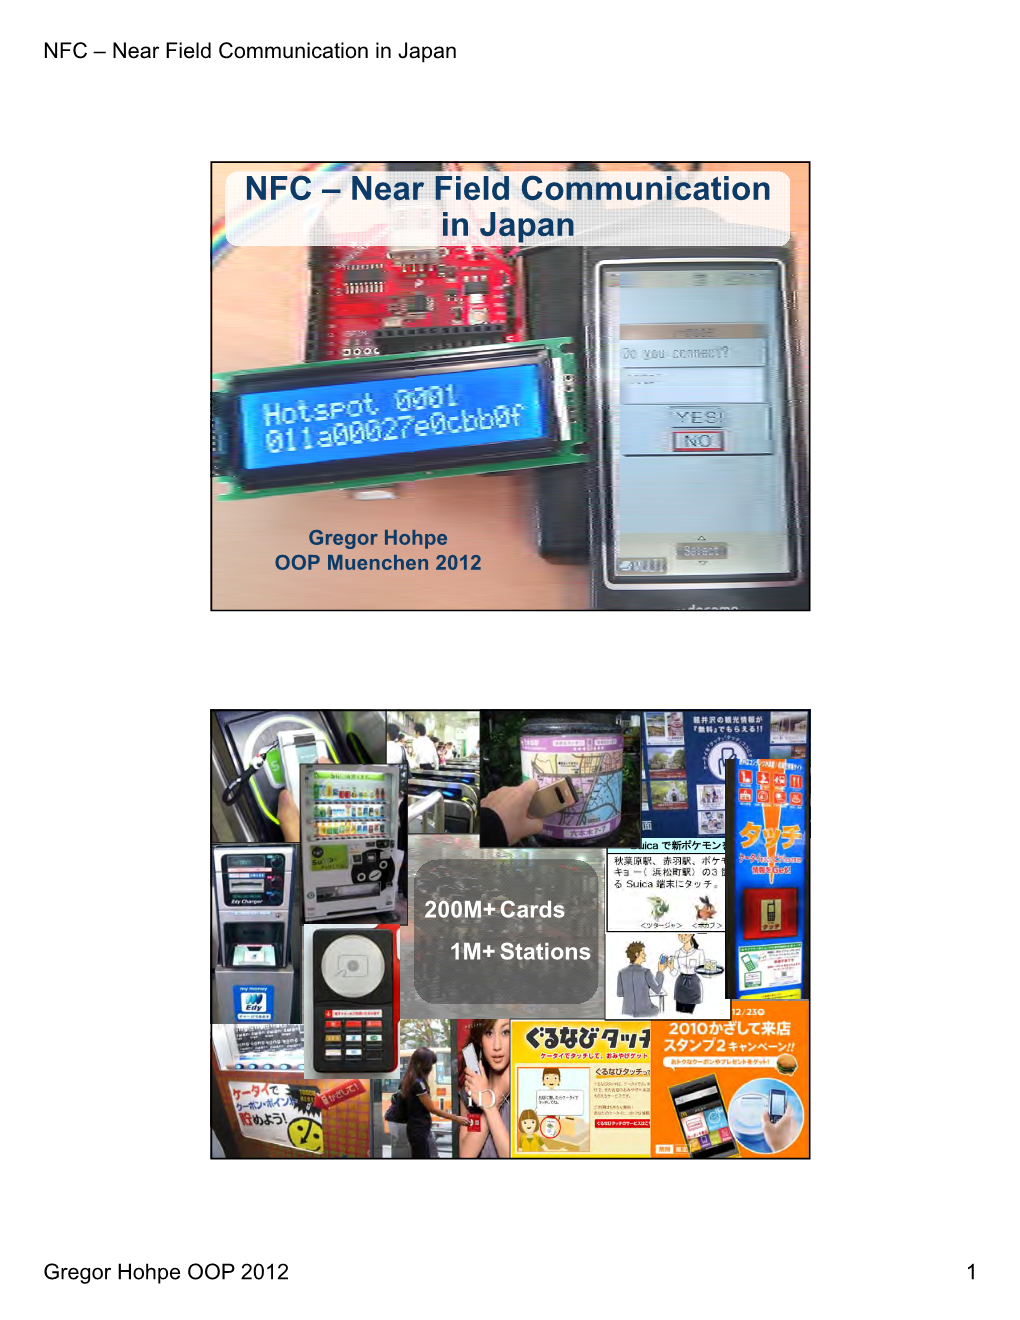 NFC – Near Field Communication in Japan